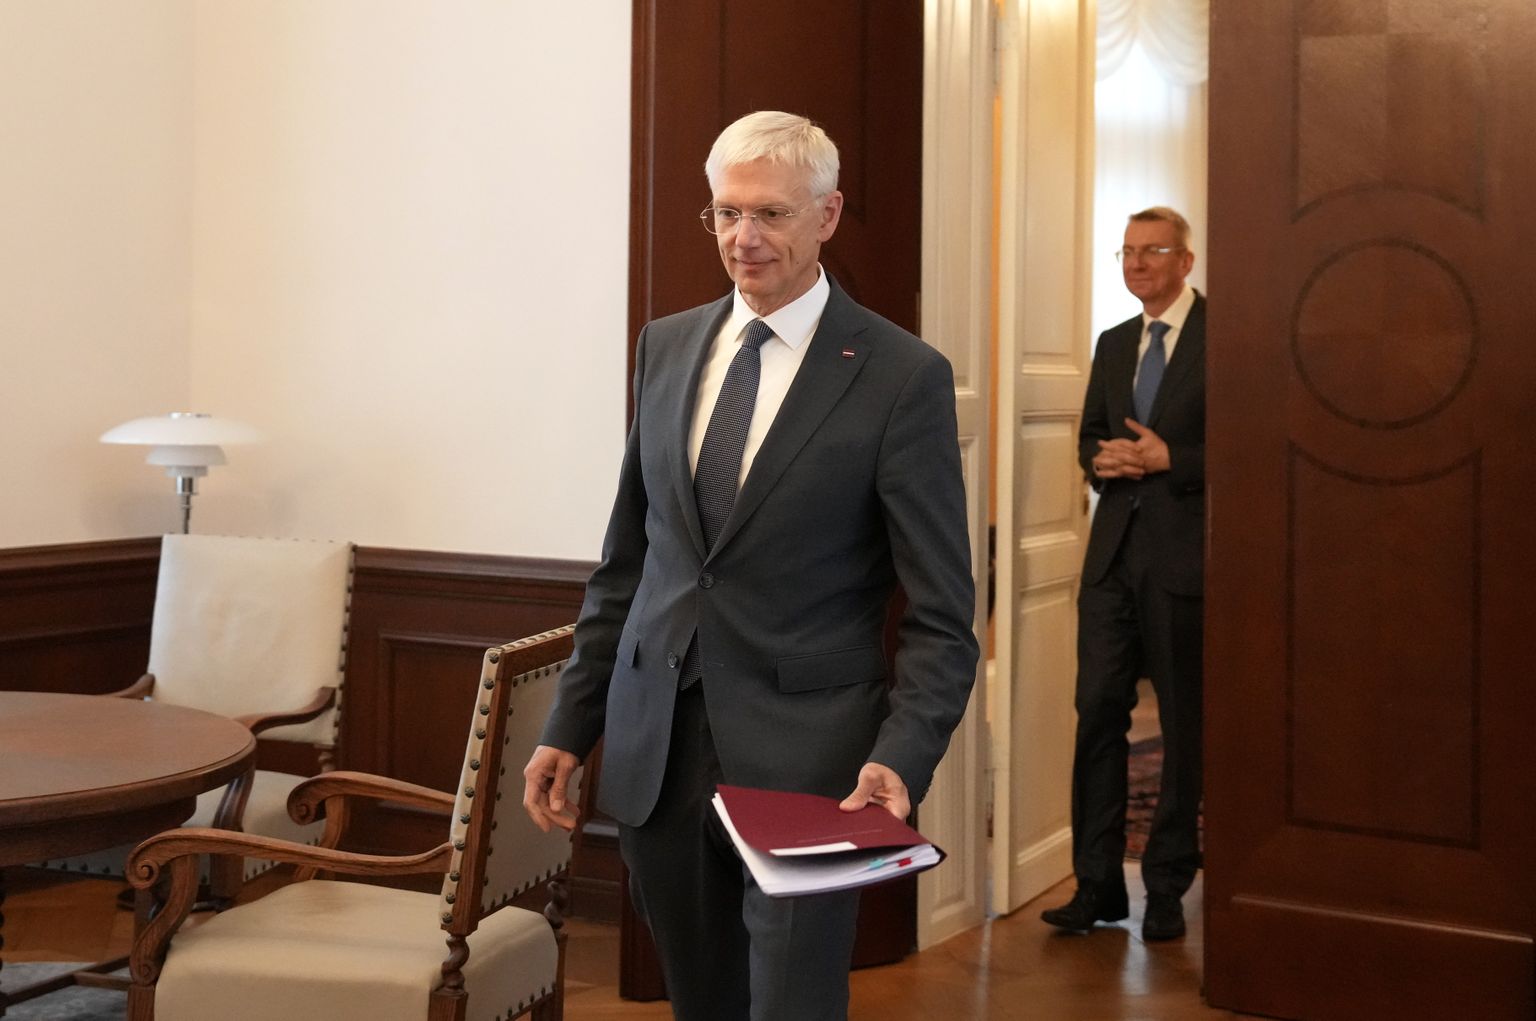 Представитель партии "Новое единство", премьер-министр Кришьянис Кариньш, прибывает на встречу с президентом в Рижском дворце, где обсудит ход переговоров о формировании правительства